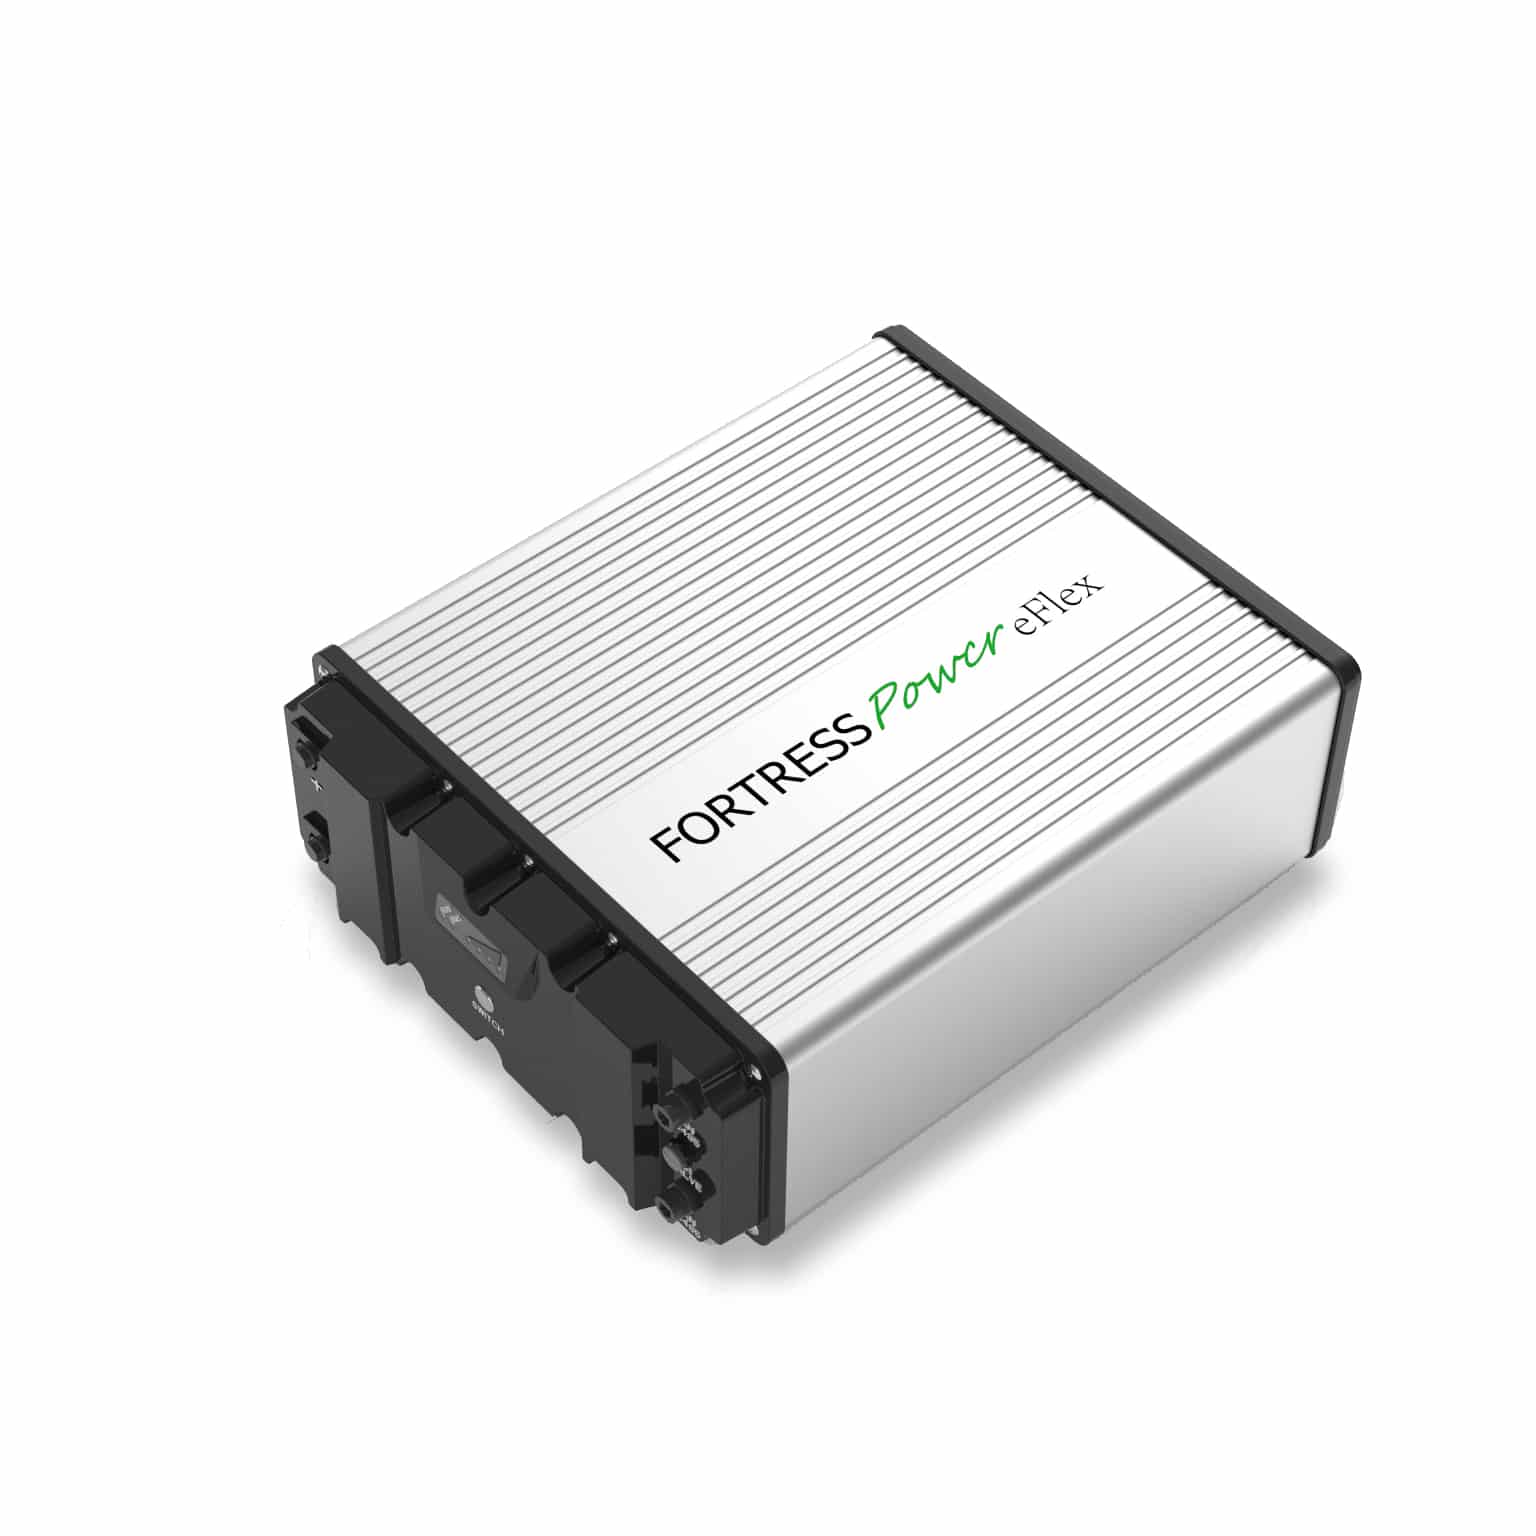 Fortress Power eFlex 5.4 – LFP Battery